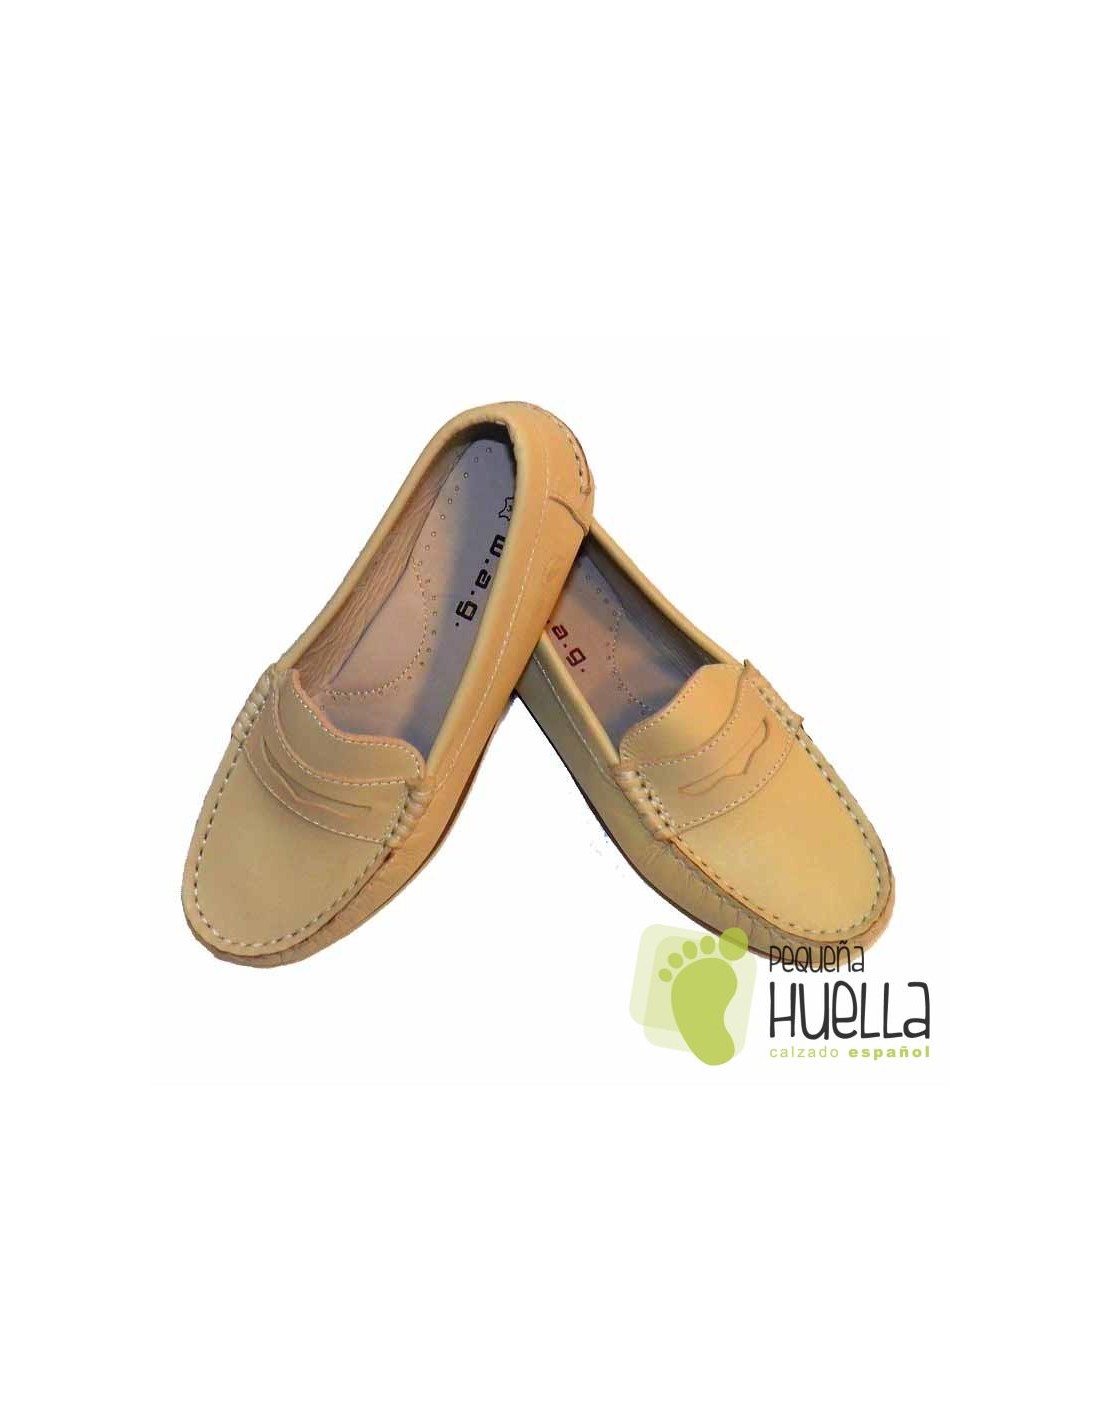 Comprar zapatos mocasines beiges para niños baratos online